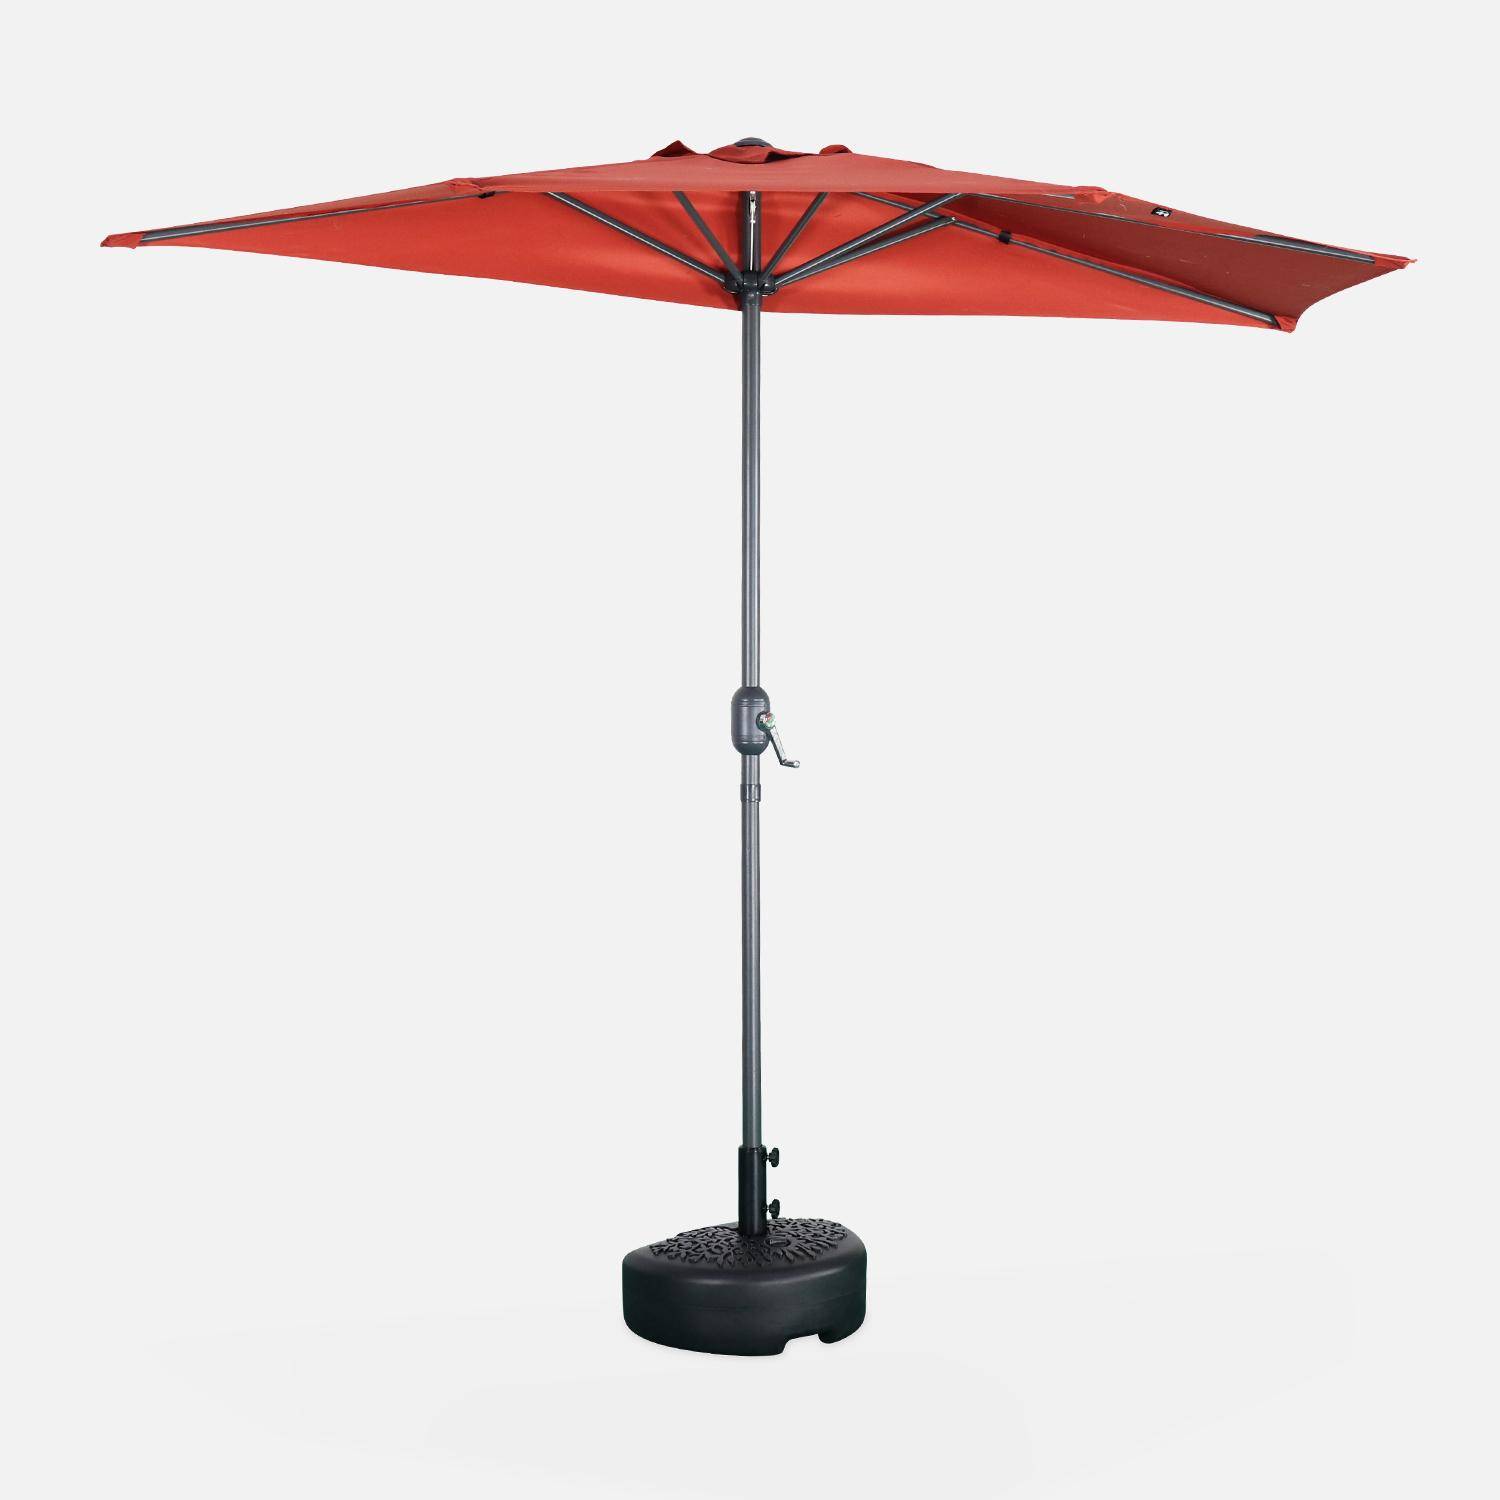  Guarda-chuva de varanda Ø250cm - CALVI - Meio guarda-chuva recto, haste em alumínio com pega de manivela, tecido terracota Photo1